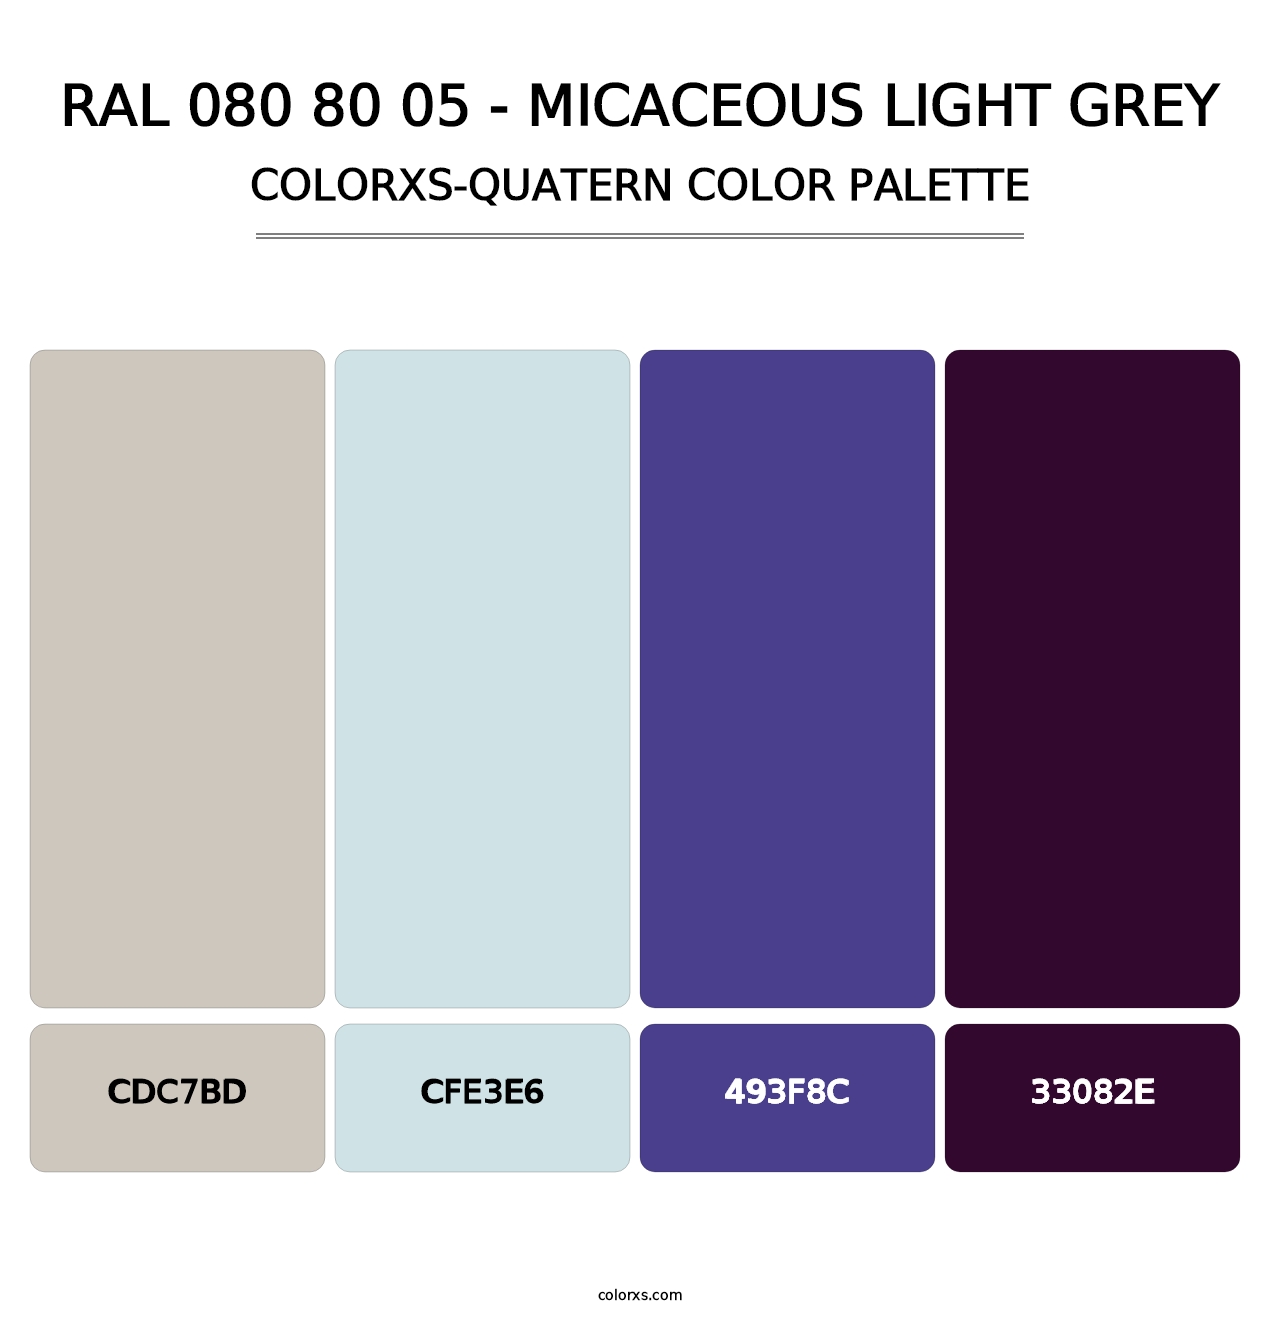 RAL 080 80 05 - Micaceous Light Grey - Colorxs Quatern Palette